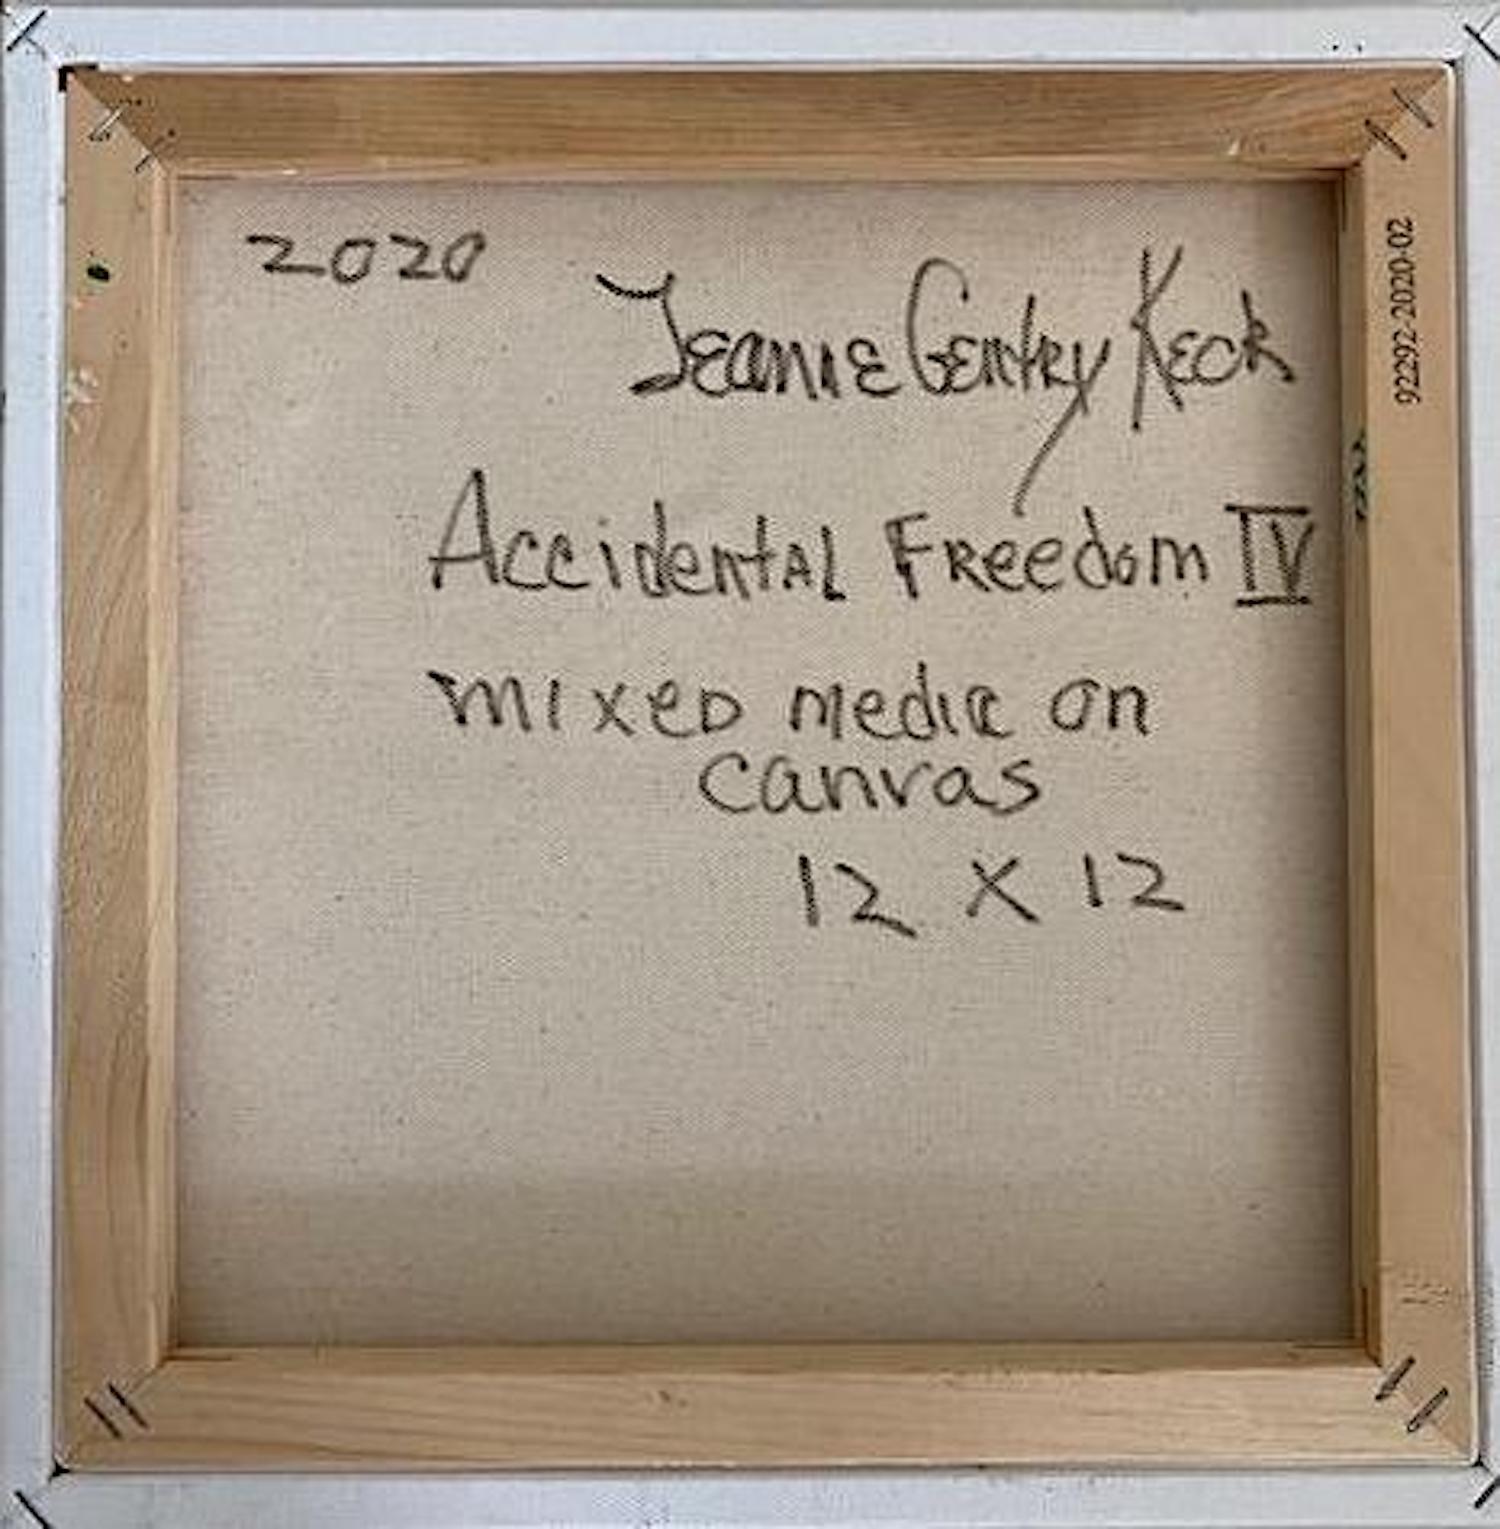 Jeanne Gentry Keck, Accidental Freedom IV, techniques mixtes sur toile, 2020 en vente 2